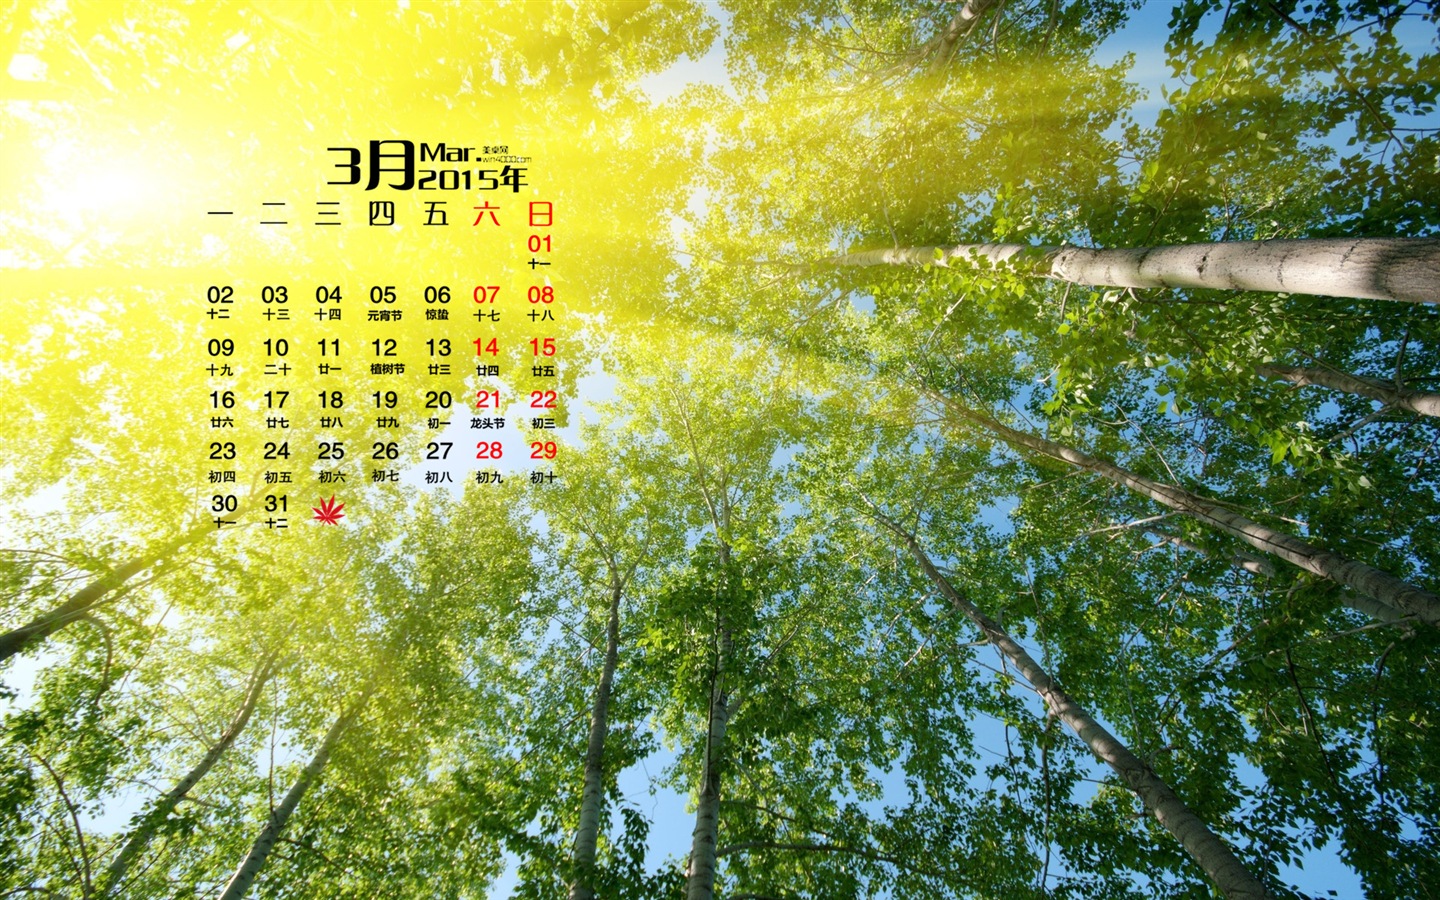 March 2015 Calendar wallpaper (1) #20 - 1440x900